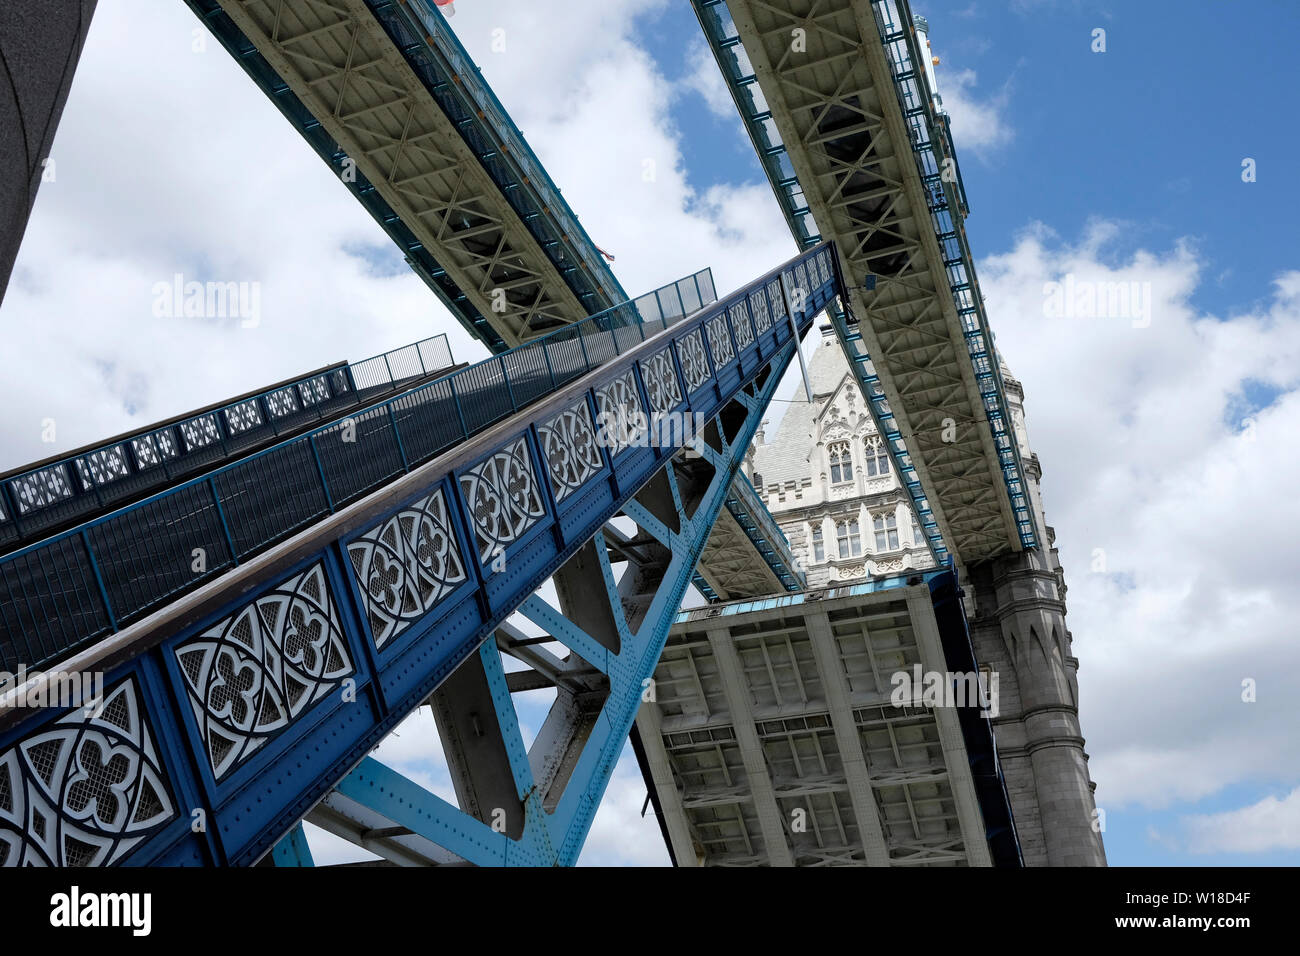 Tower Bridge opening Stock Photo